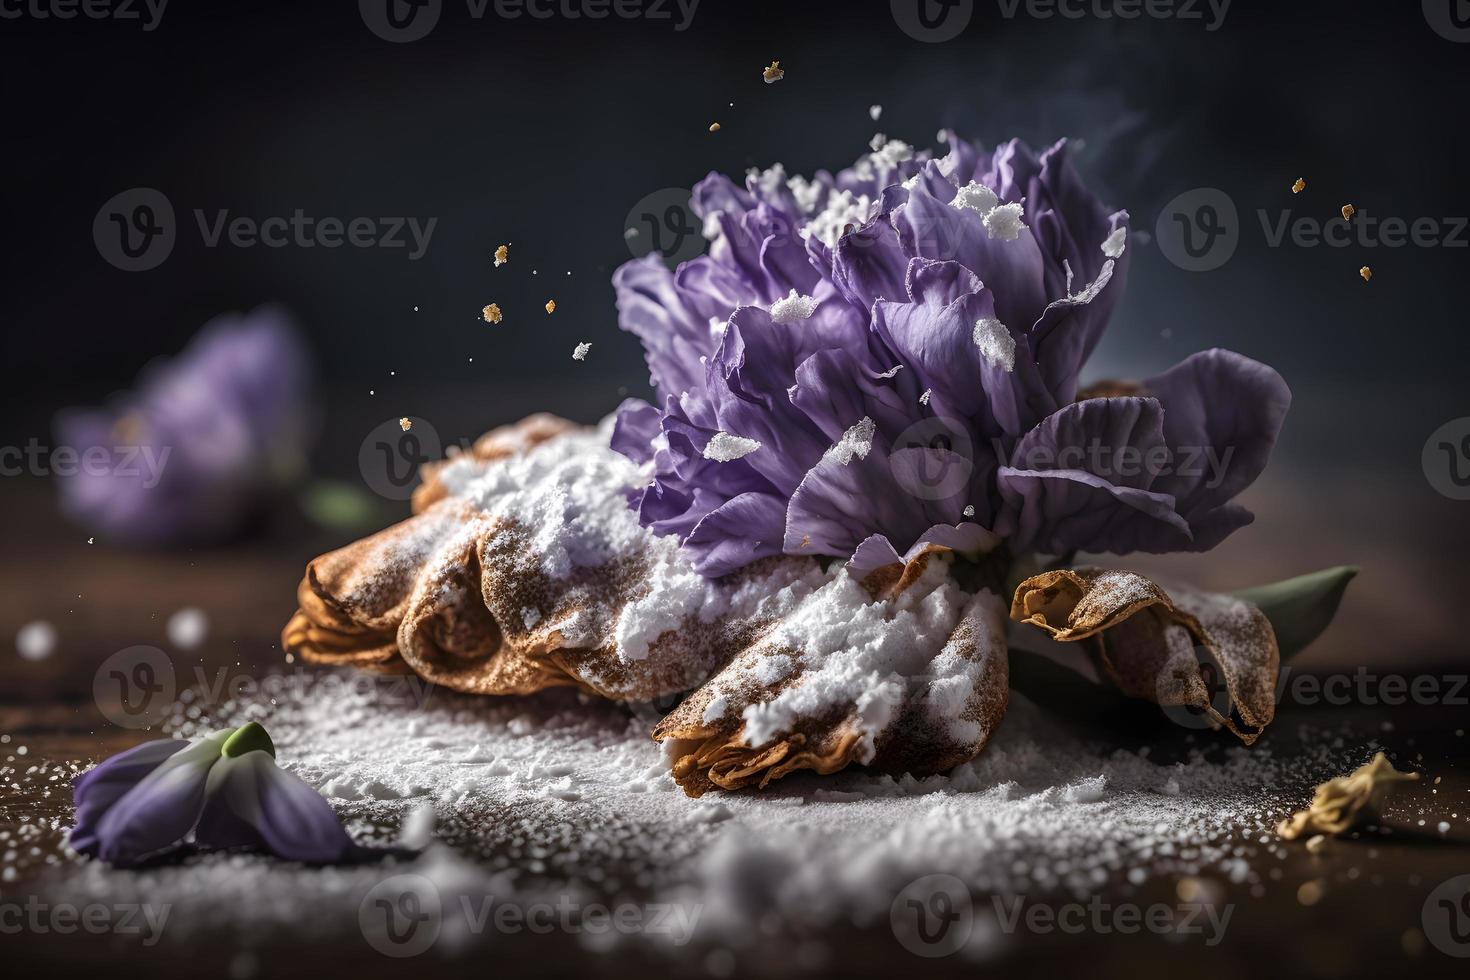 hemlagad och gott friterad lila blomma med pulveriserad socker mat fotografi foto